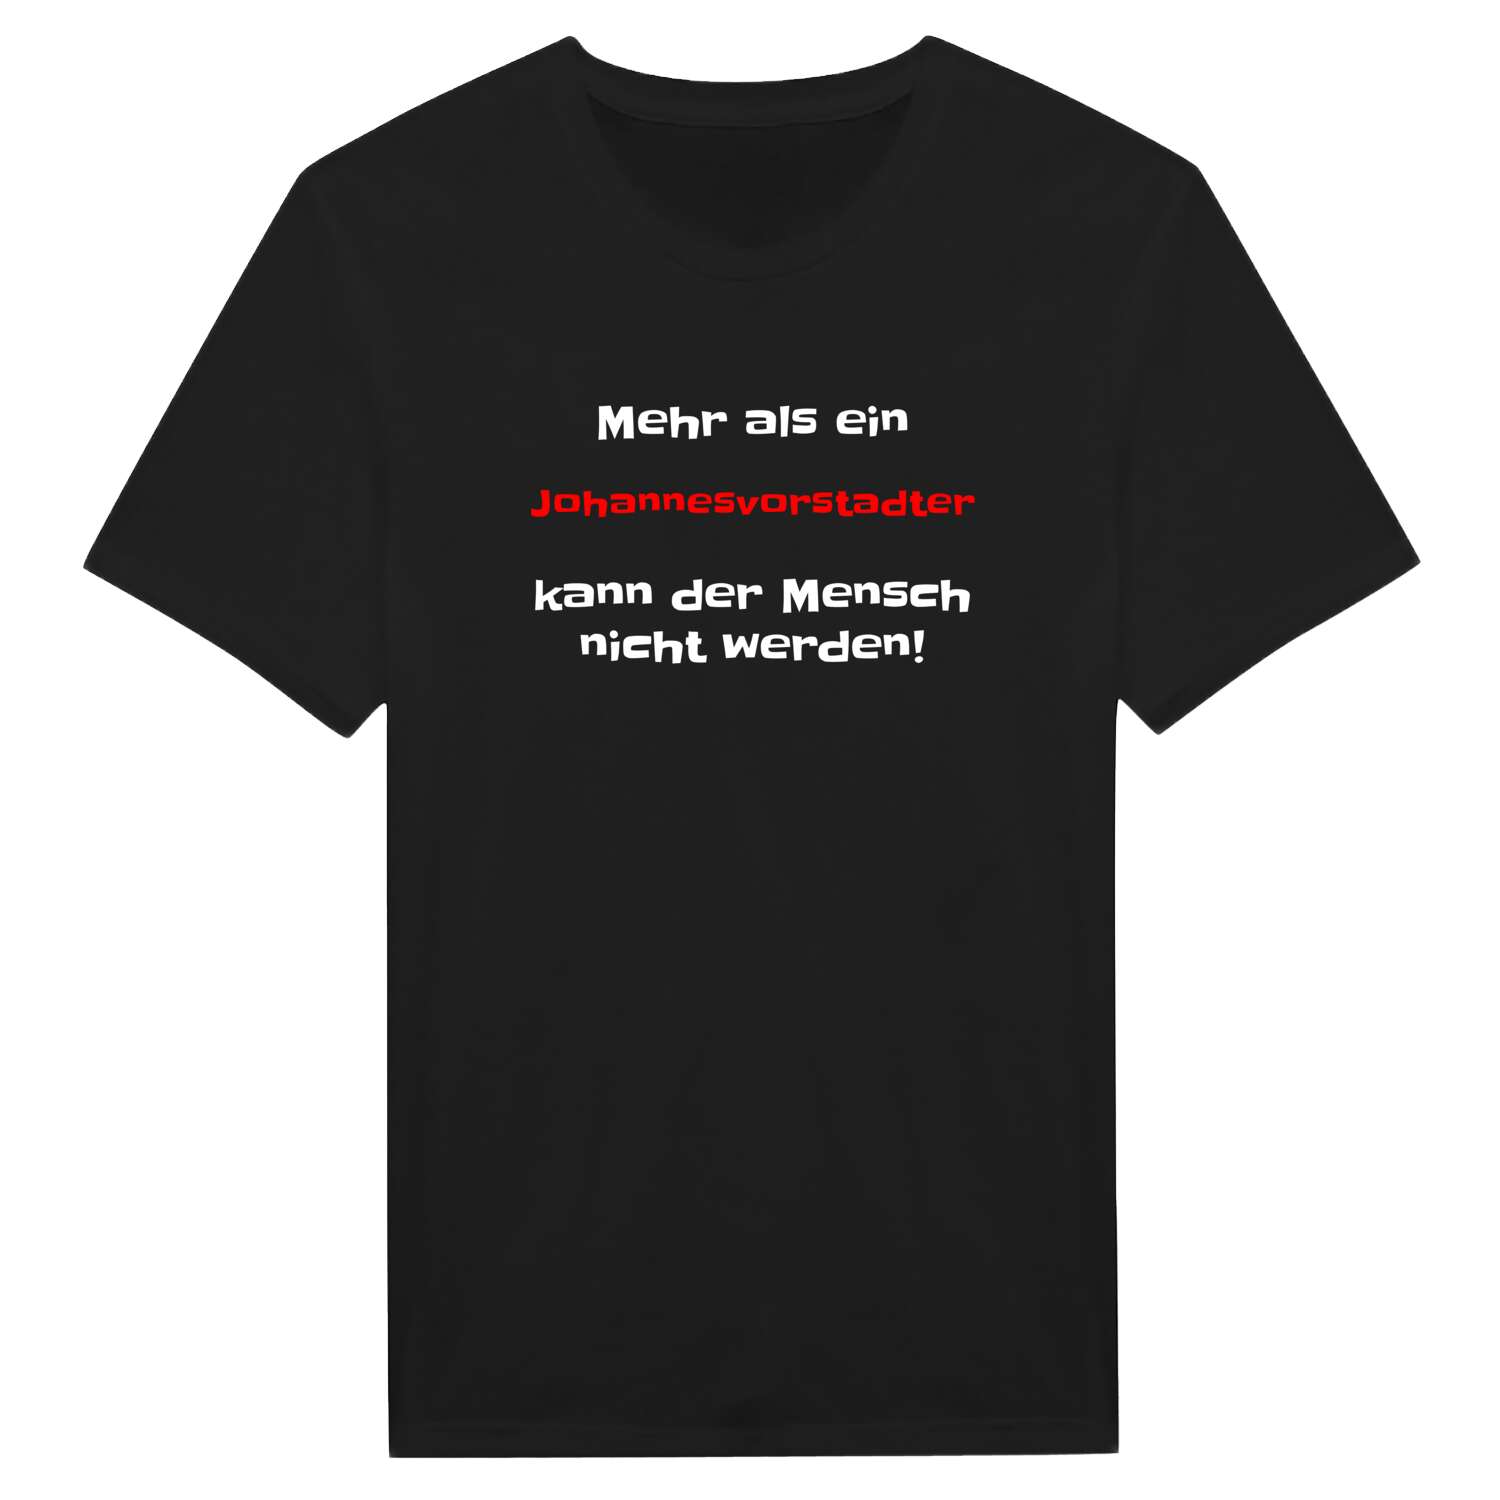 Johannesvorstadt T-Shirt »Mehr als ein«